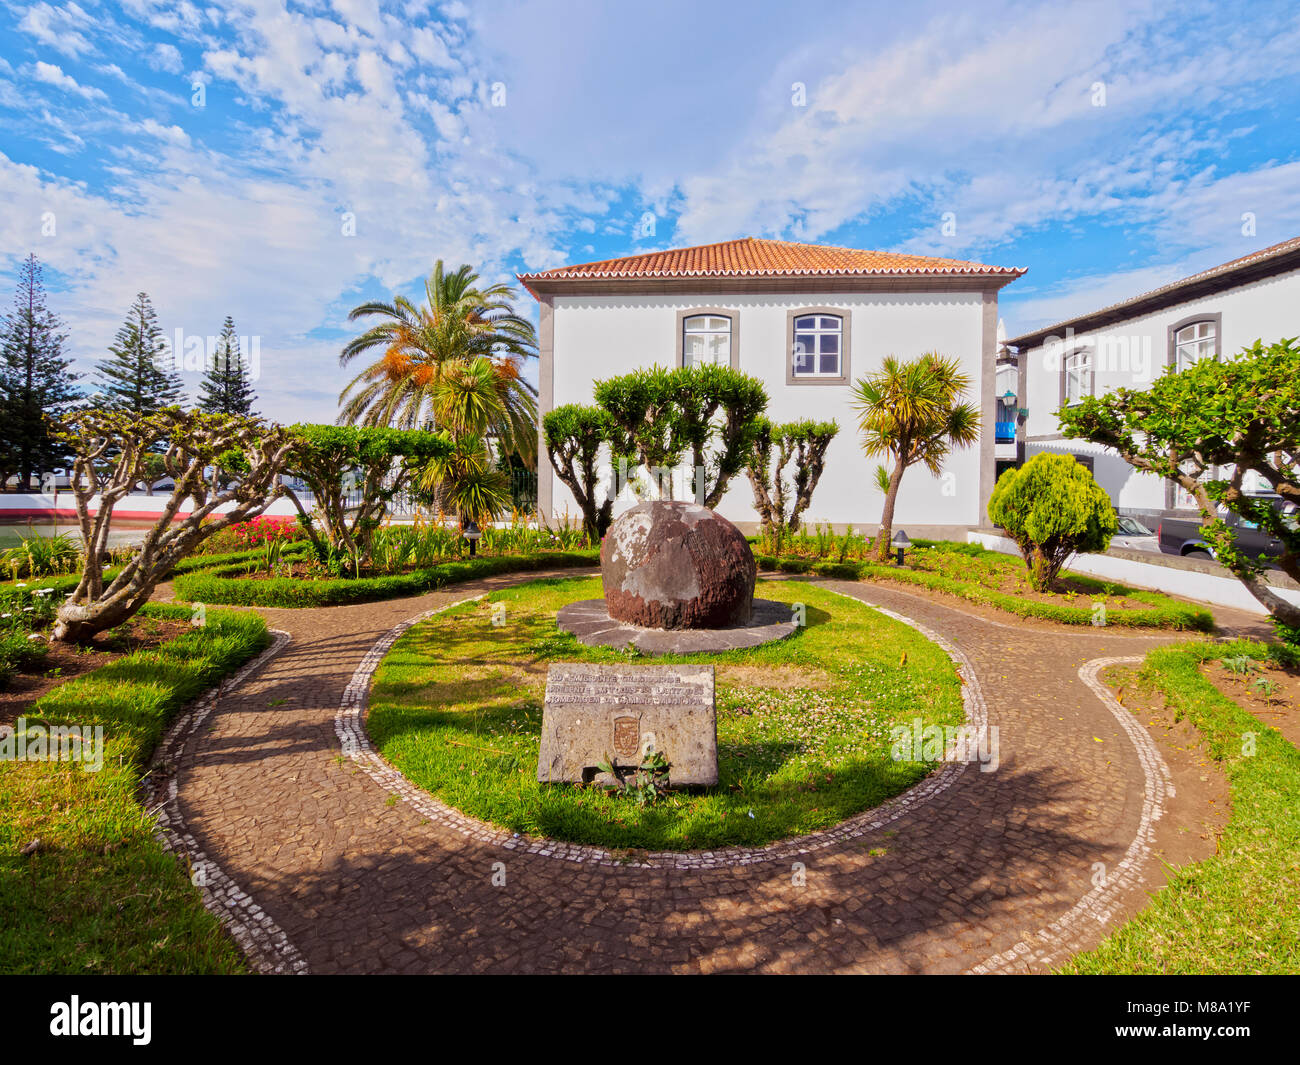 Od Architecture Santa Cruz, île de Graciosa, Açores, Portugal Banque D'Images